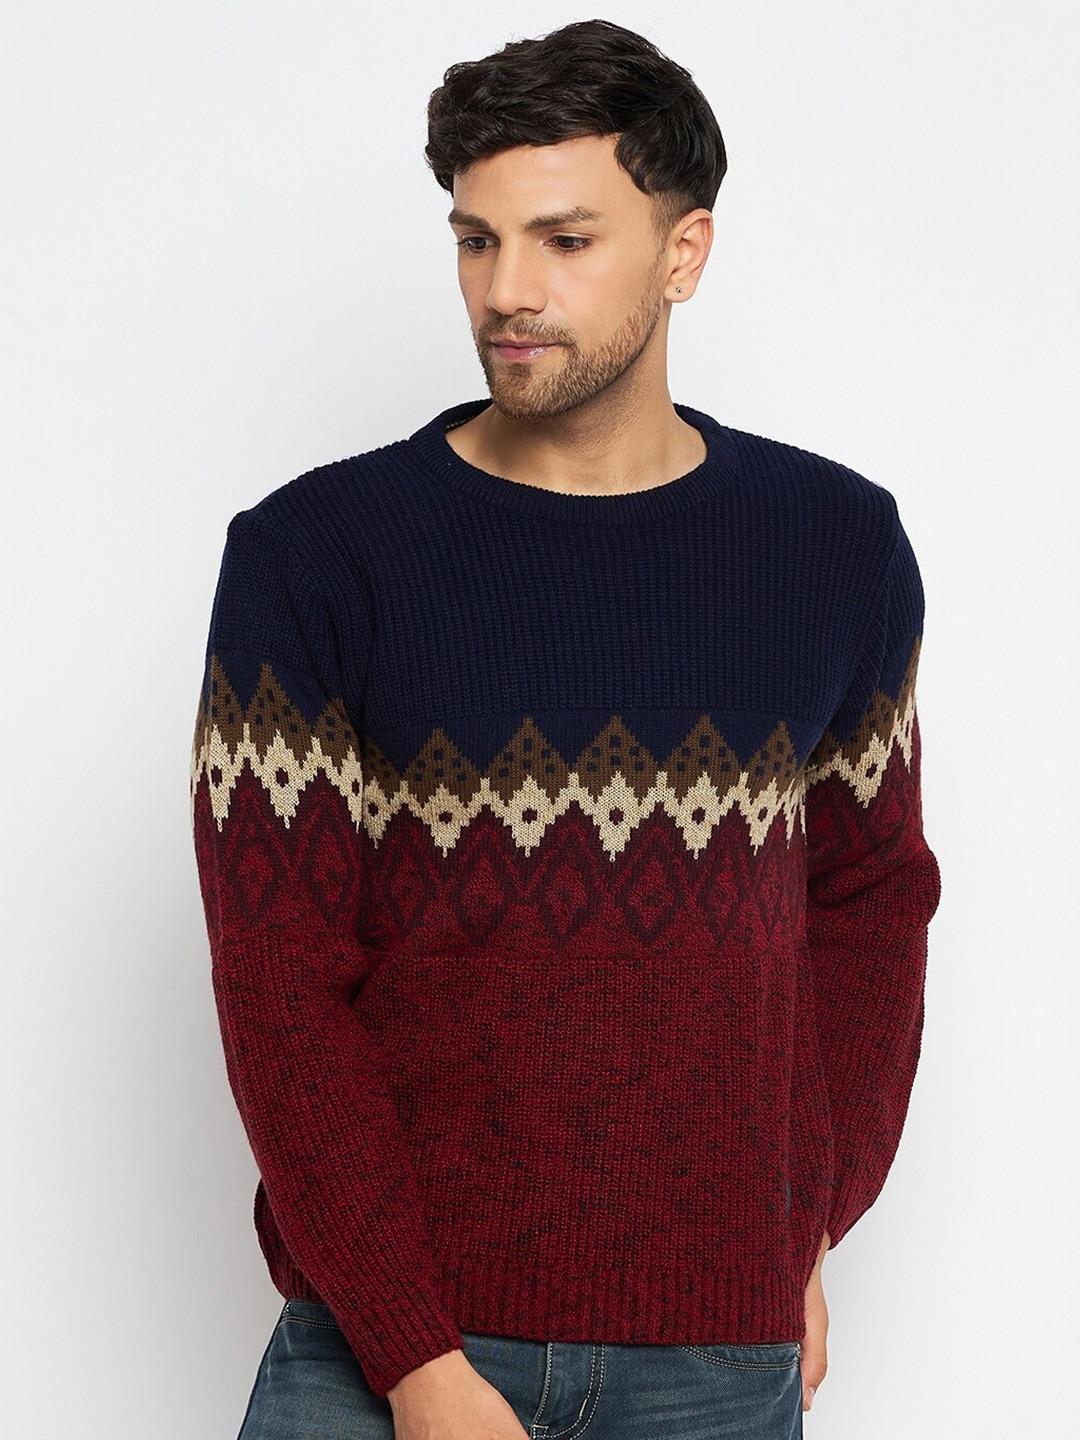 duke-colourblocked-acrylic-pullover-sweaters